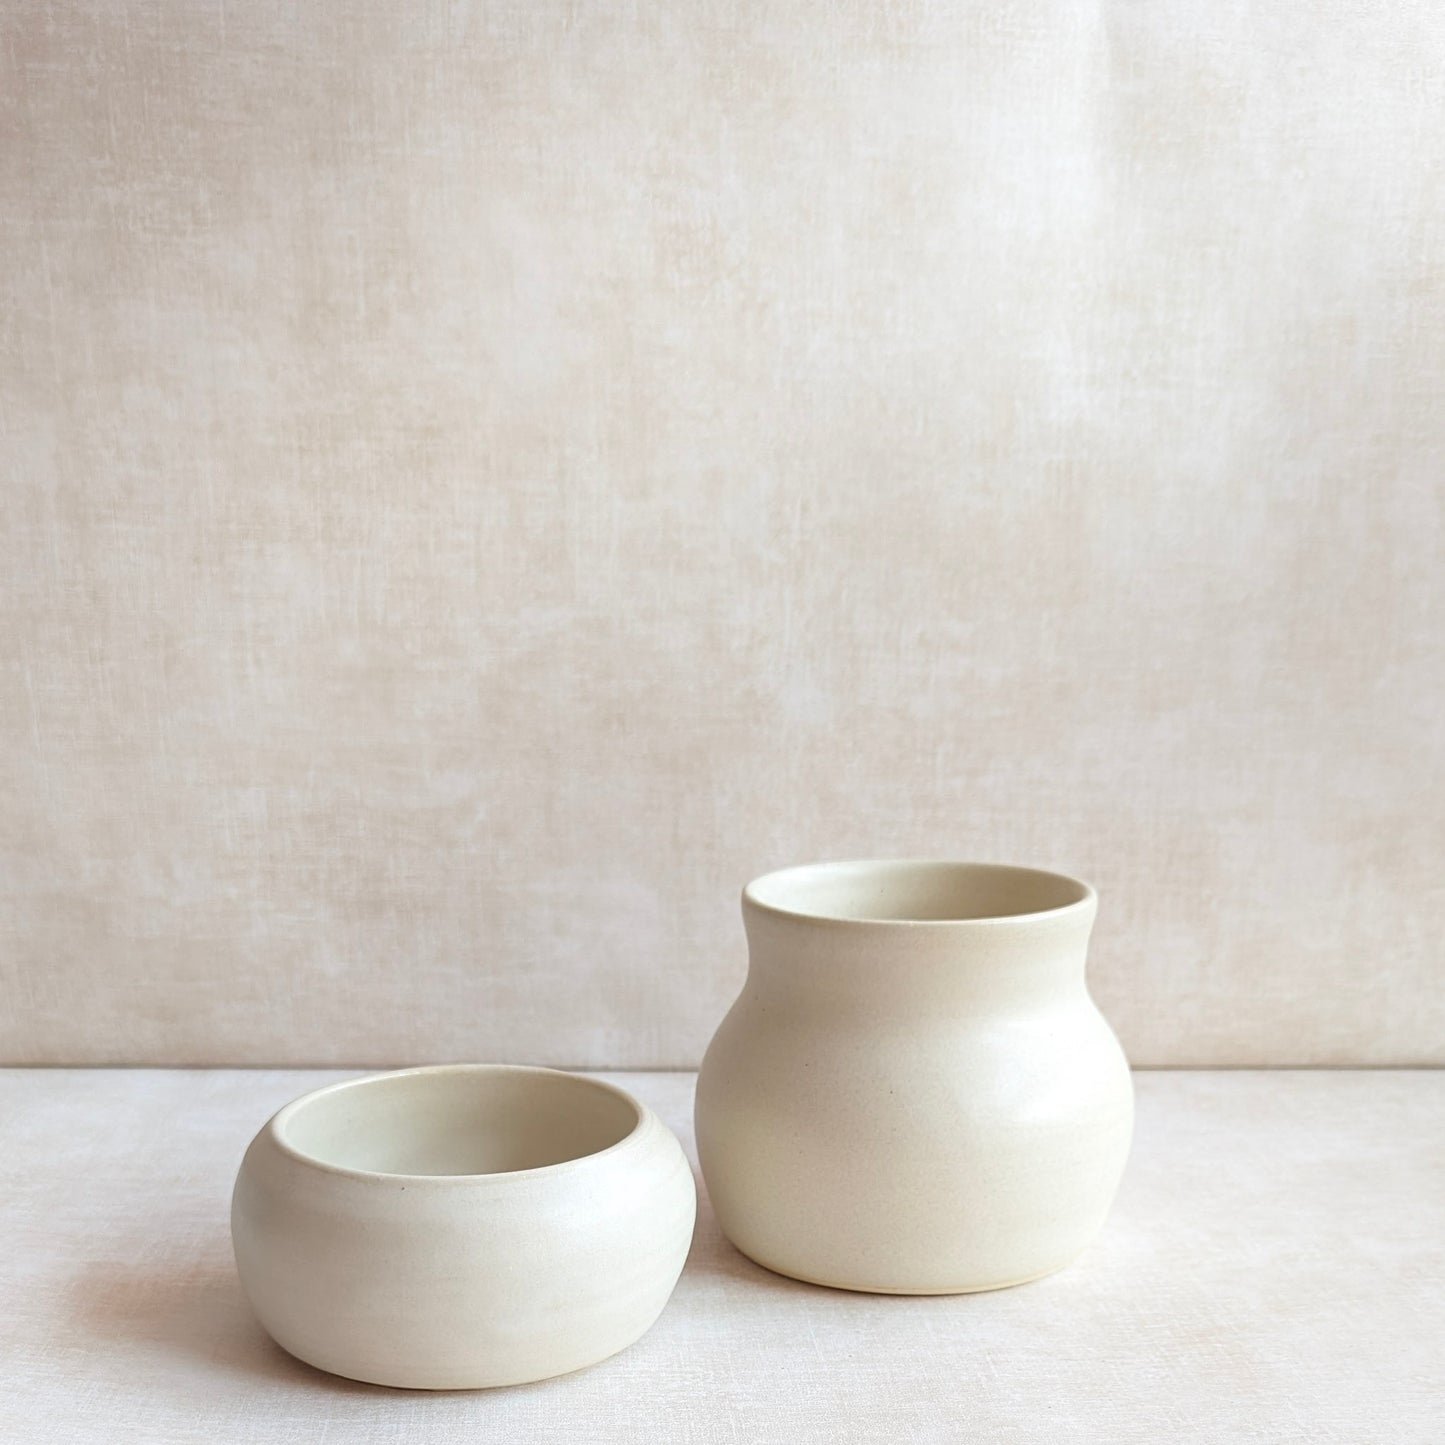 Bowl and Vase Vignette Set of 2